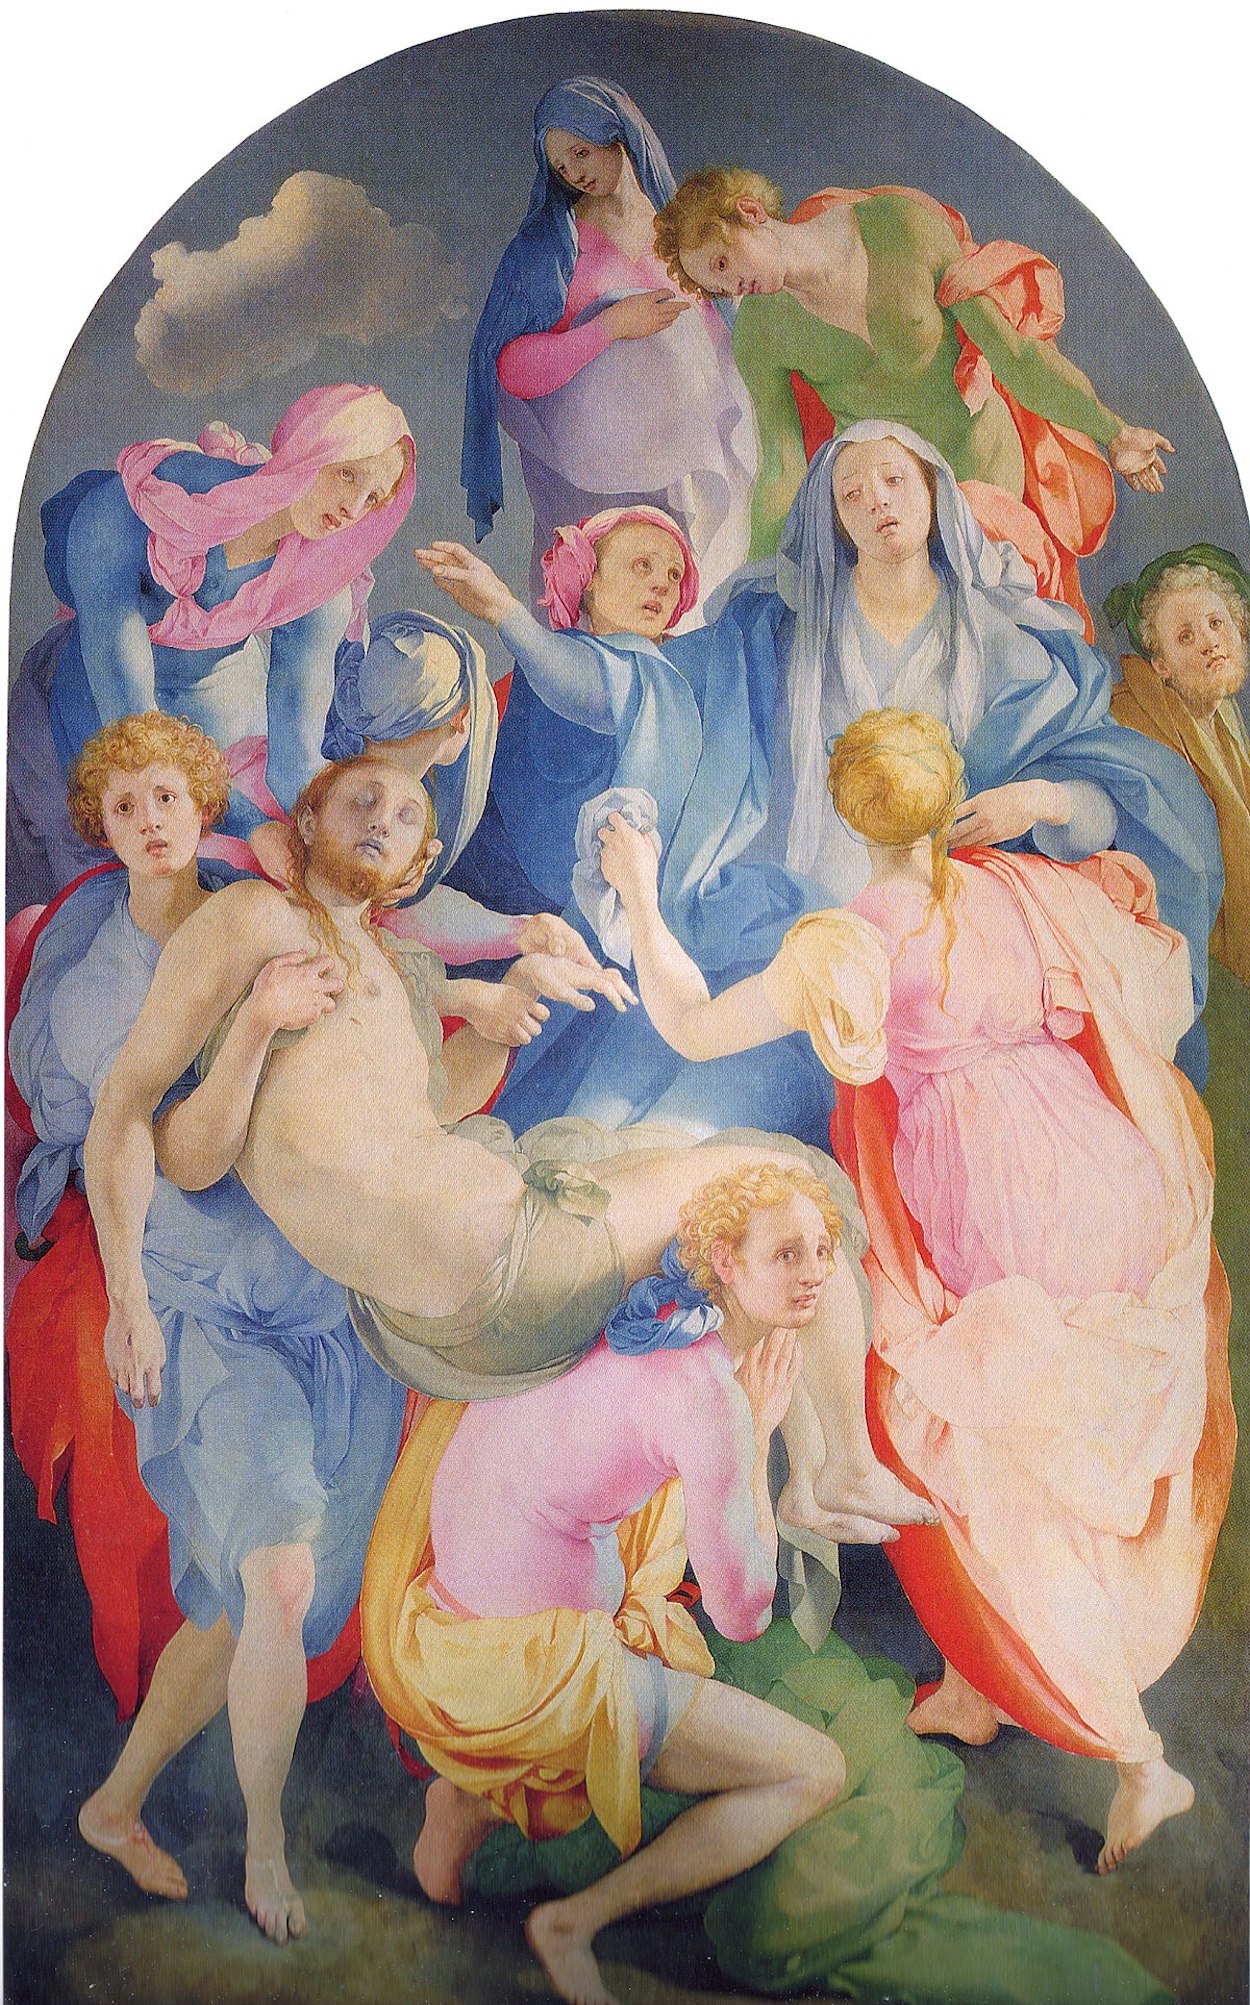 Keresztről levétel by Jacopo da Pontormo - 1528 - 312,4 cm × 193 cm 